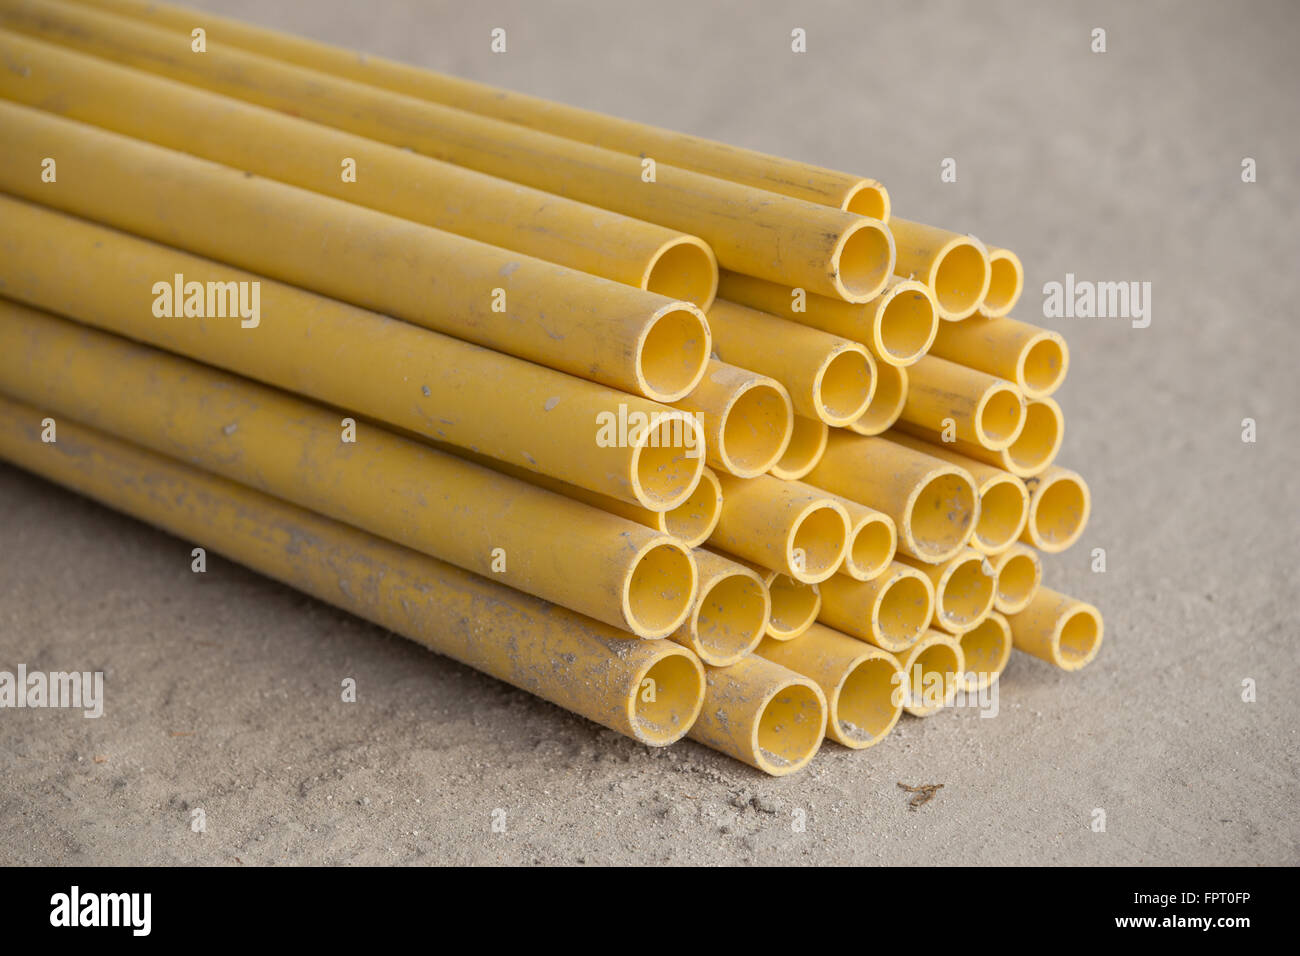 Les tuyaux en PVC jaune pour conduite électrique Banque D'Images